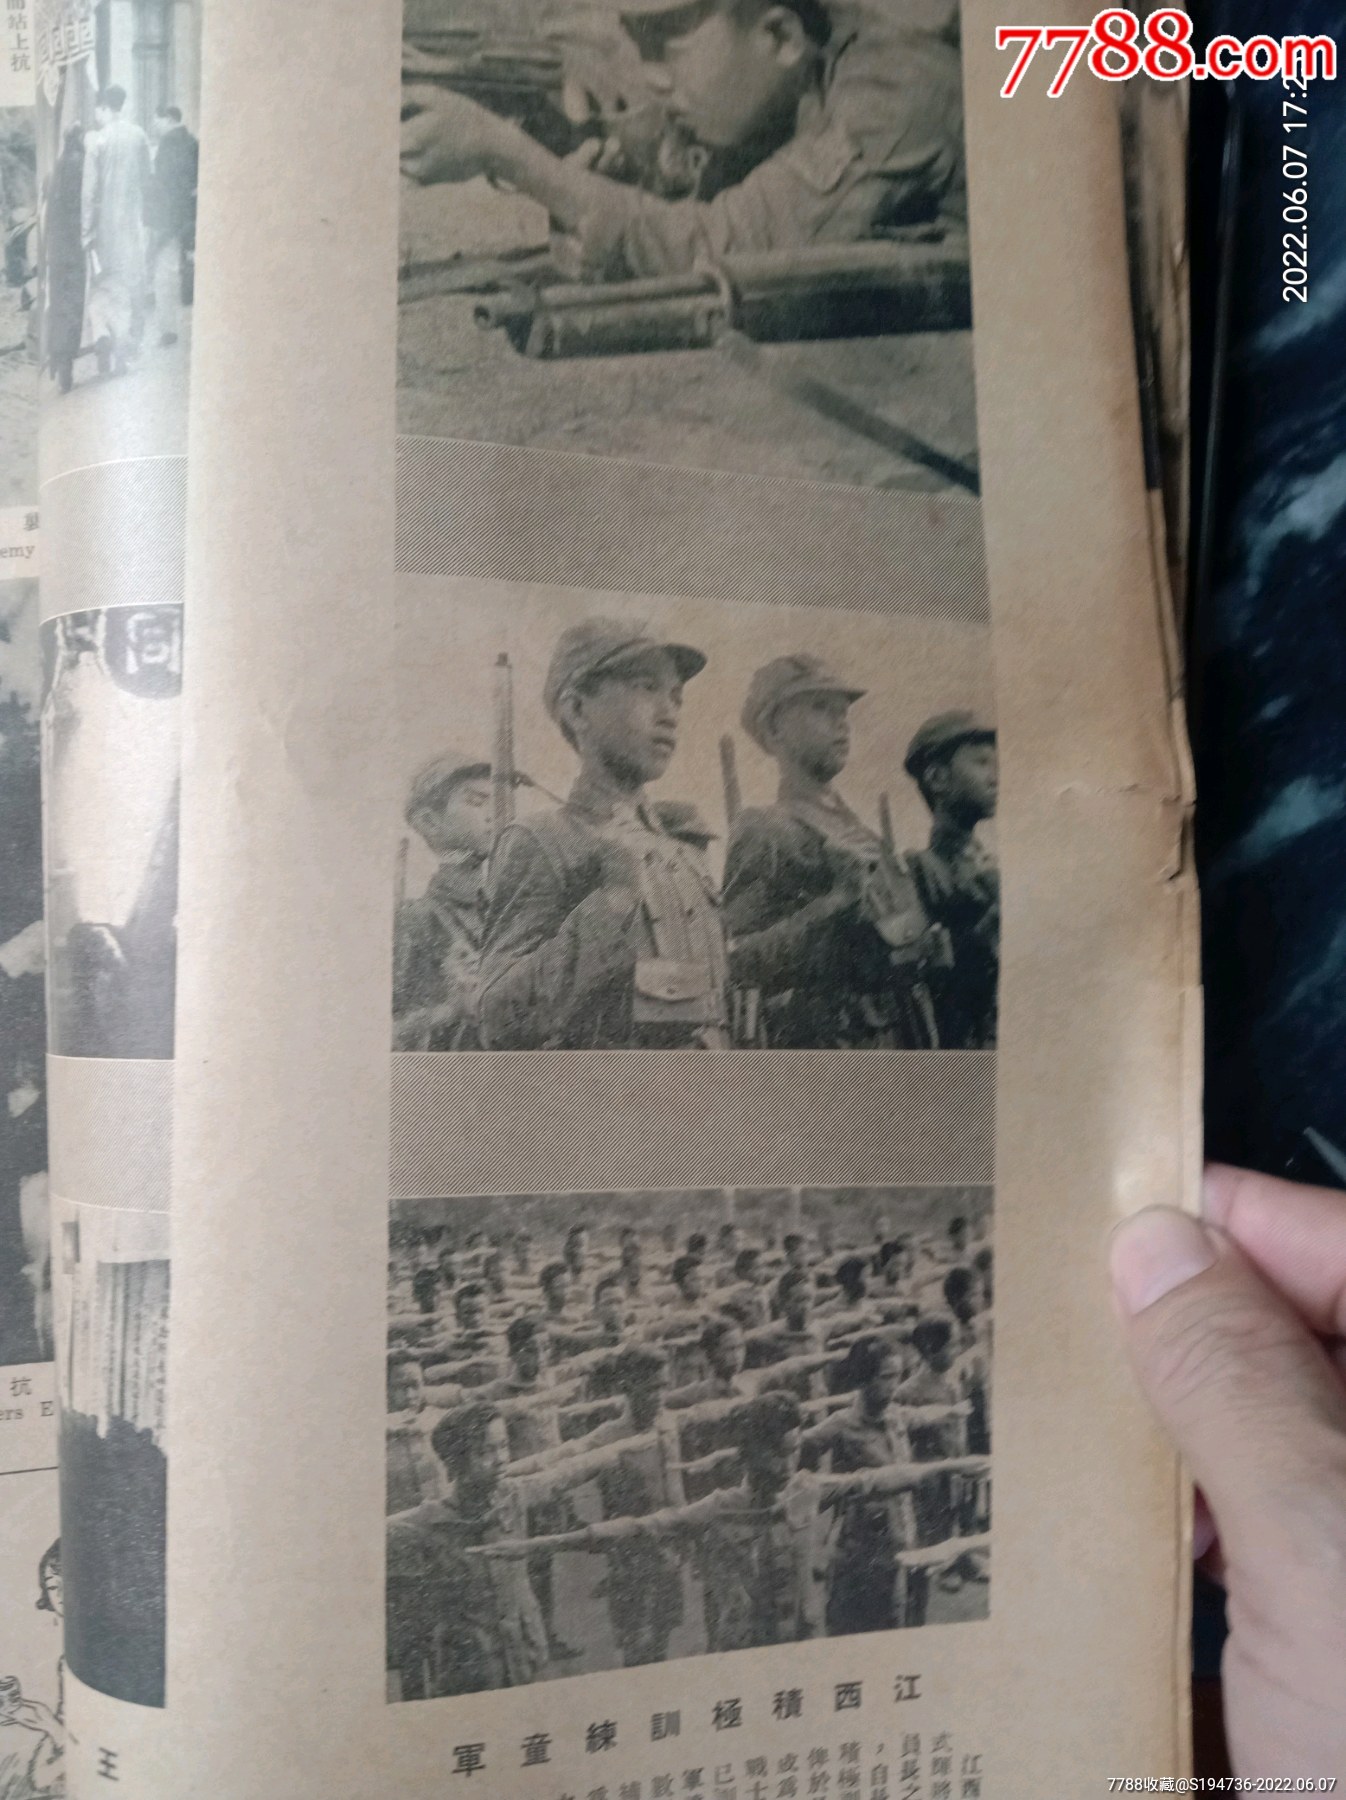 民國時期抗戰畫報《大美畫報》1939年版。_價格438元_第25張_